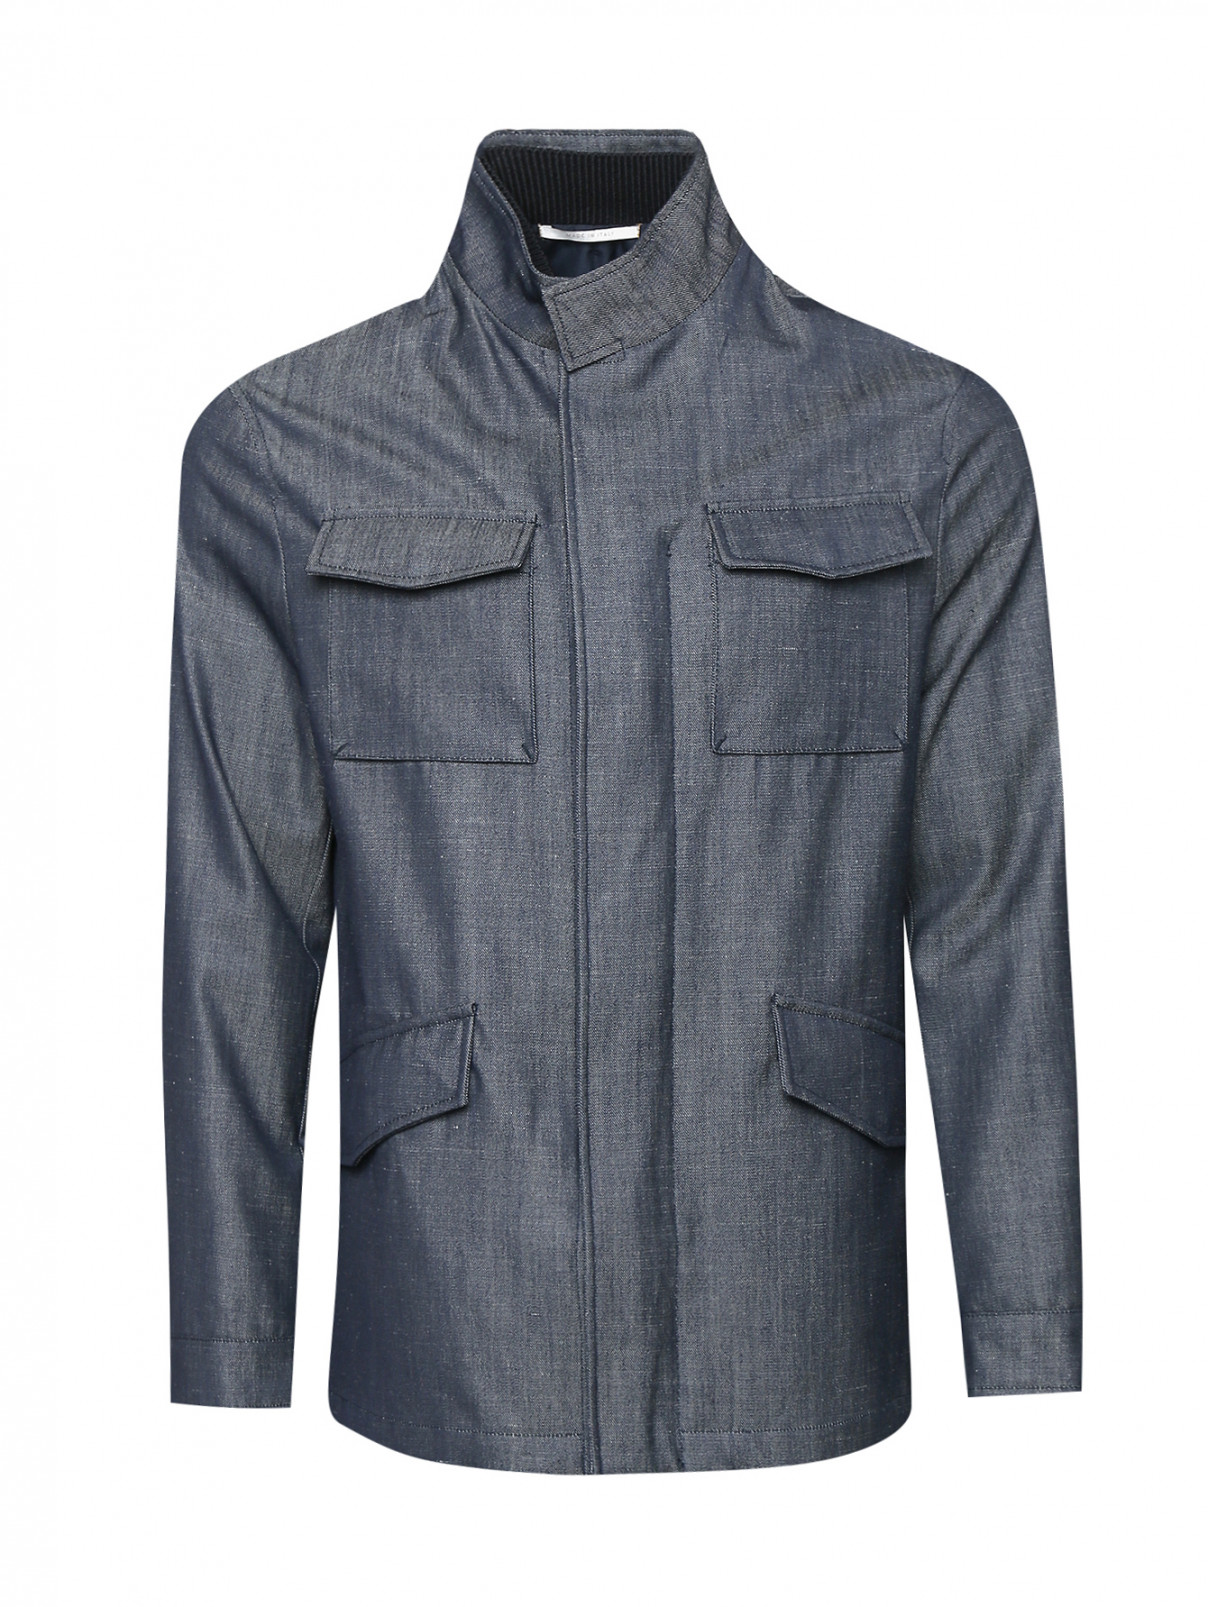 Куртка на молнии с накладными карманами Pal Zileri  –  Общий вид  – Цвет:  Синий